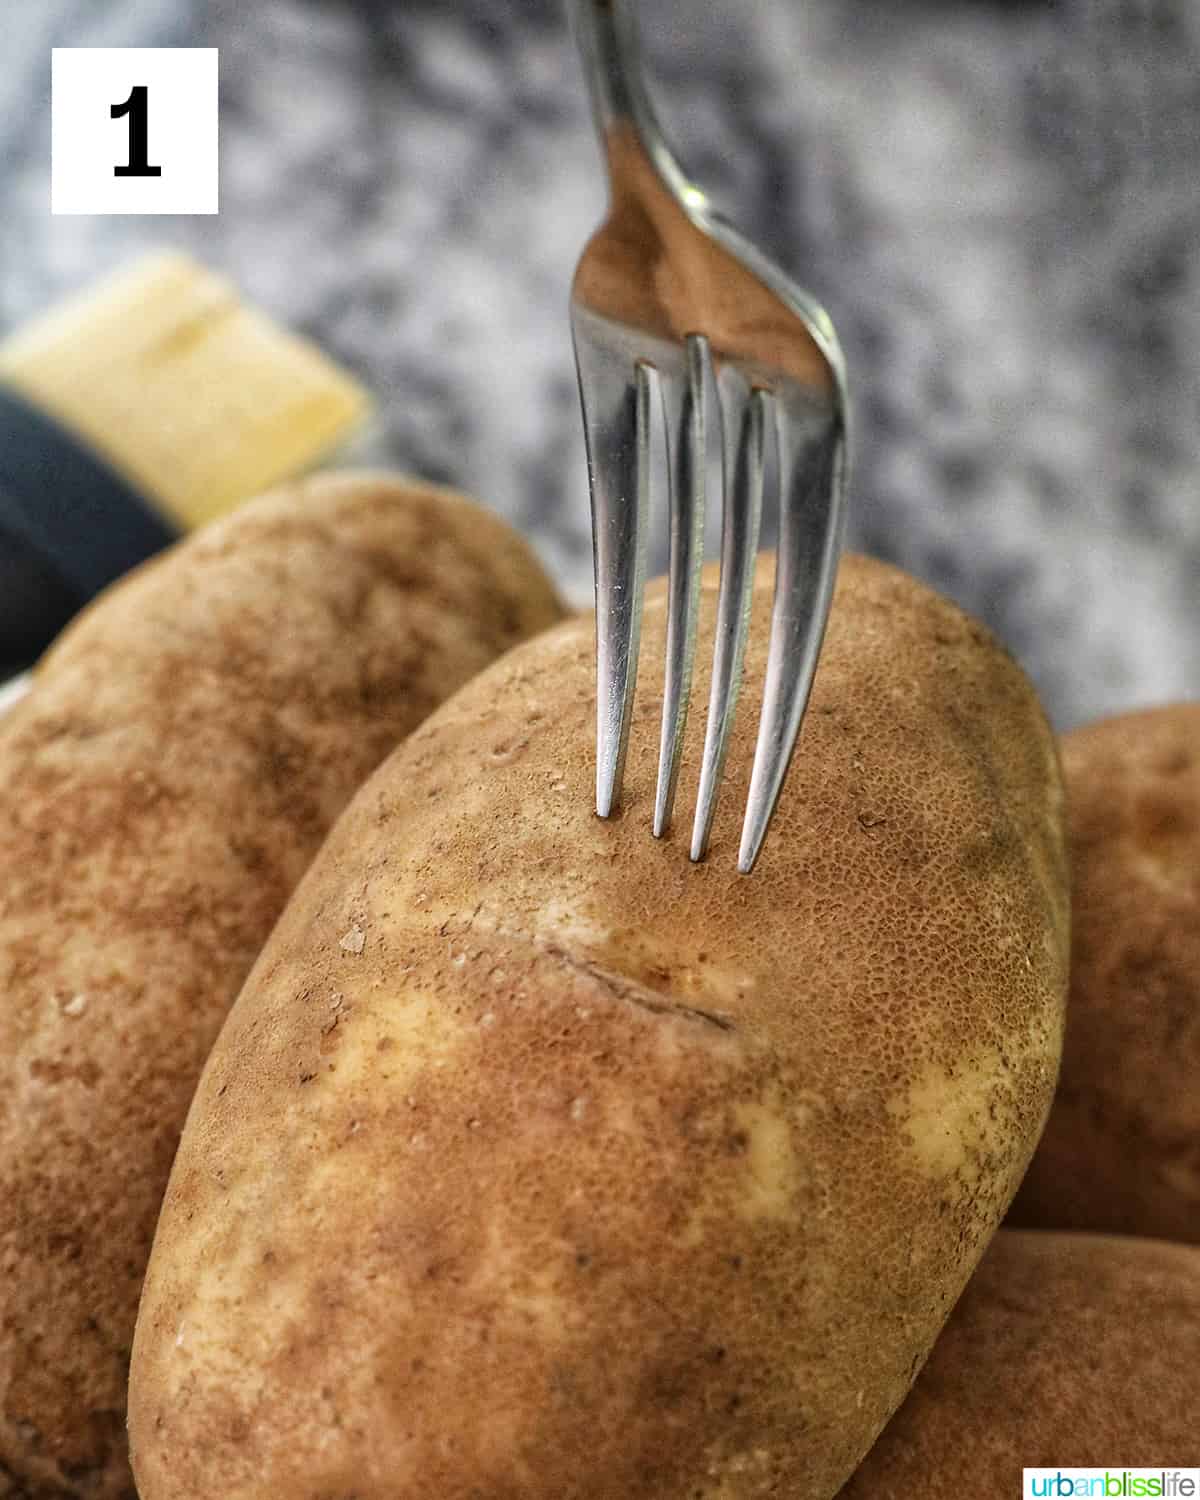 a fork piercing the center of a baking potato.